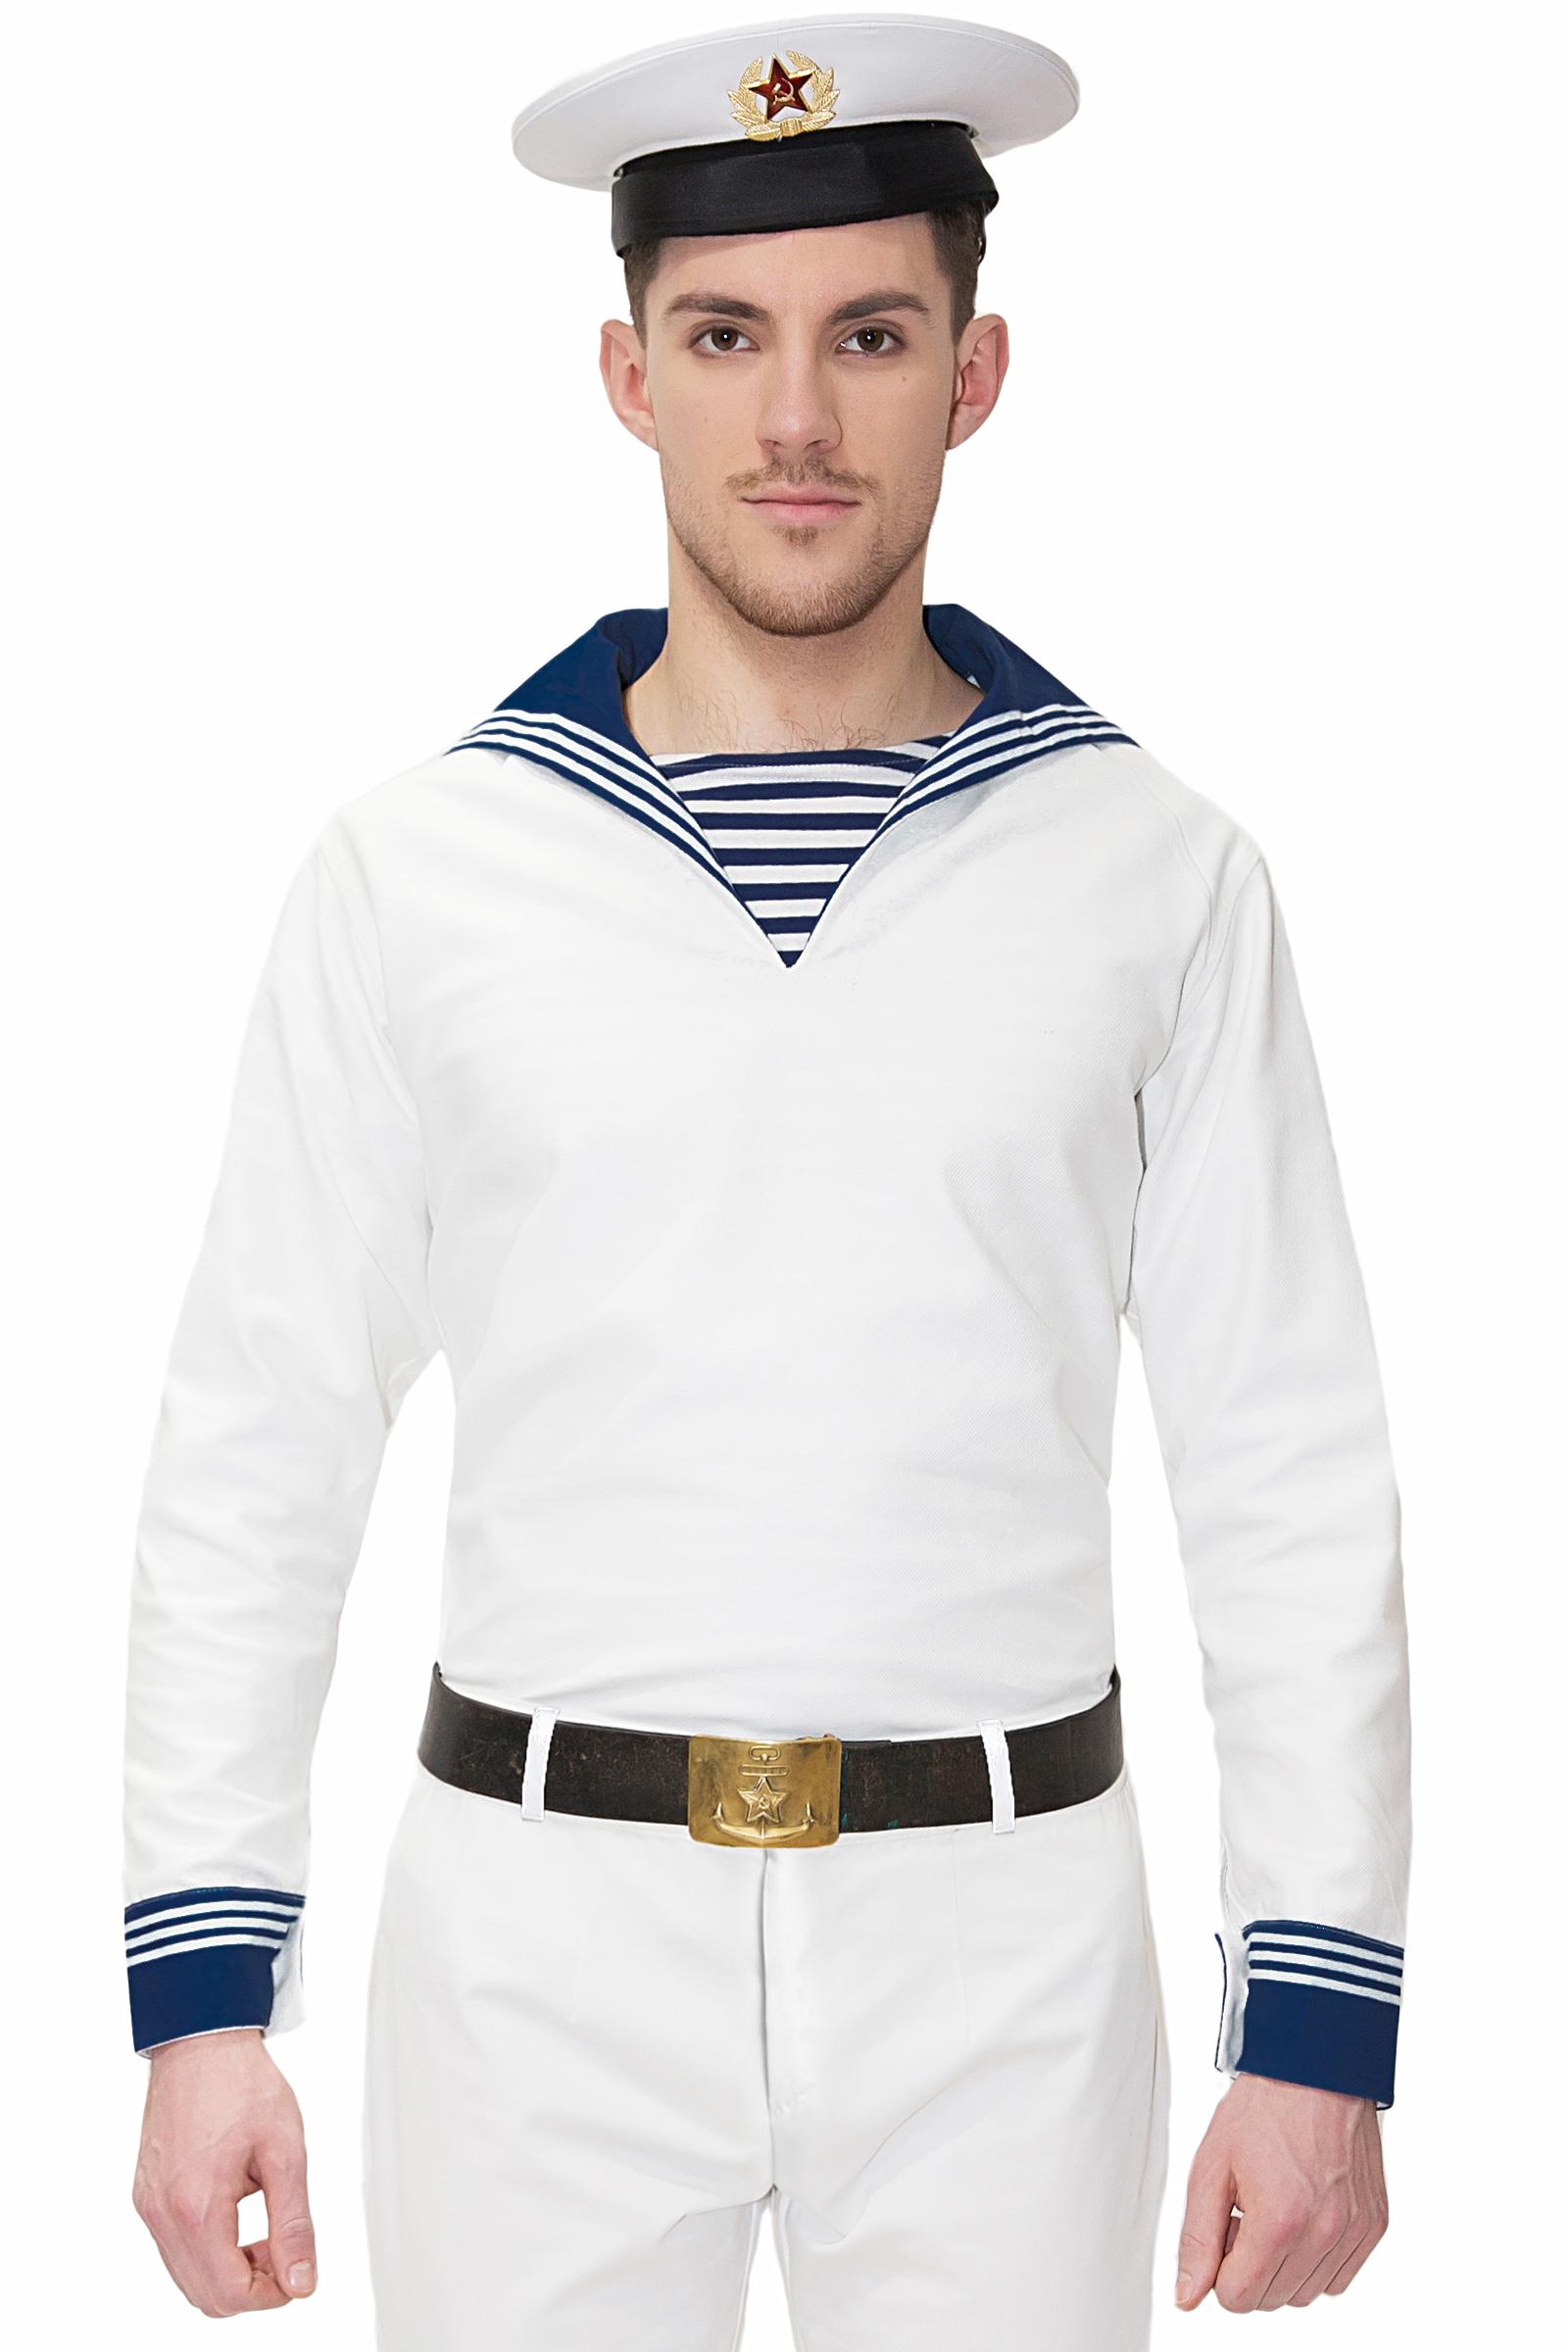 Одежда у моряков